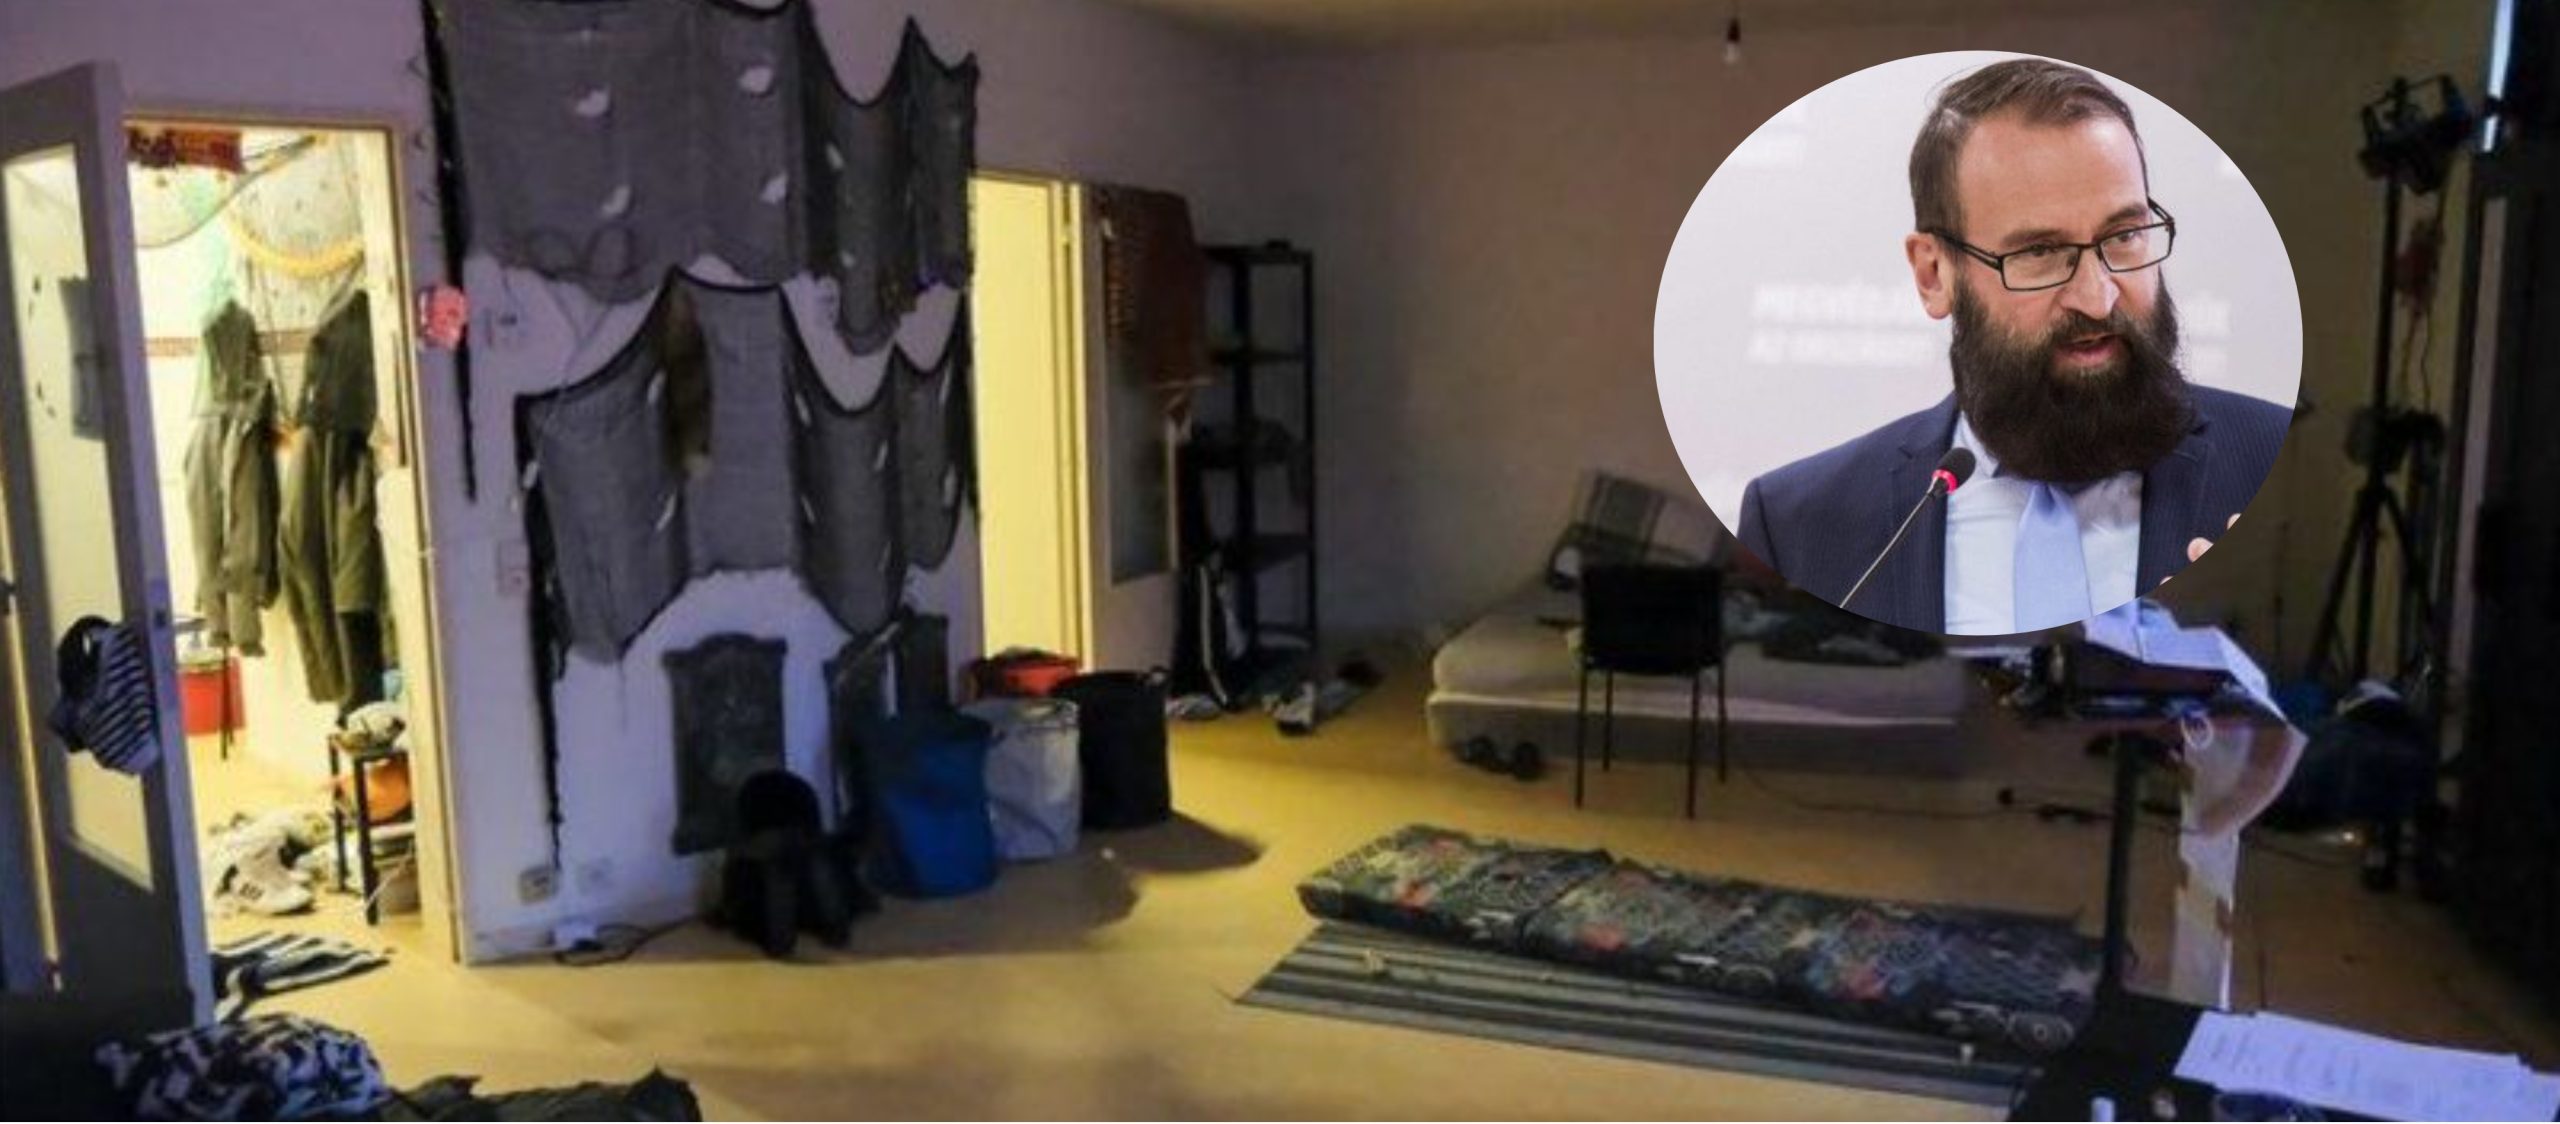 Βρυξέλλες: Αυτό είναι το δωμάτιο στο οποίο έγινε το σεξουαλικό όργιο (φώτο)